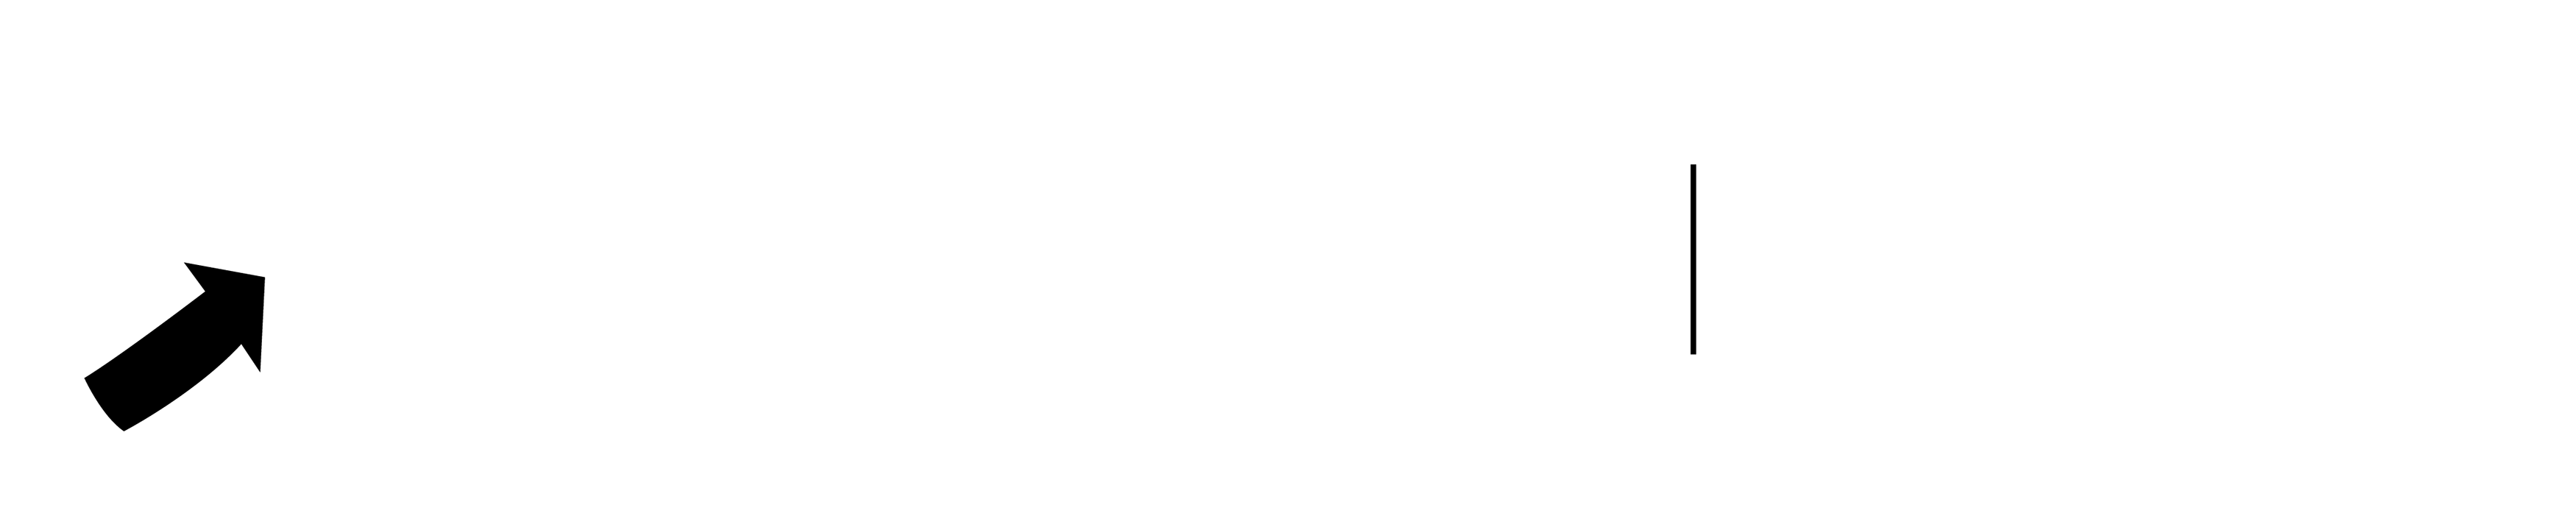 Garner Energizing Workflows Logo